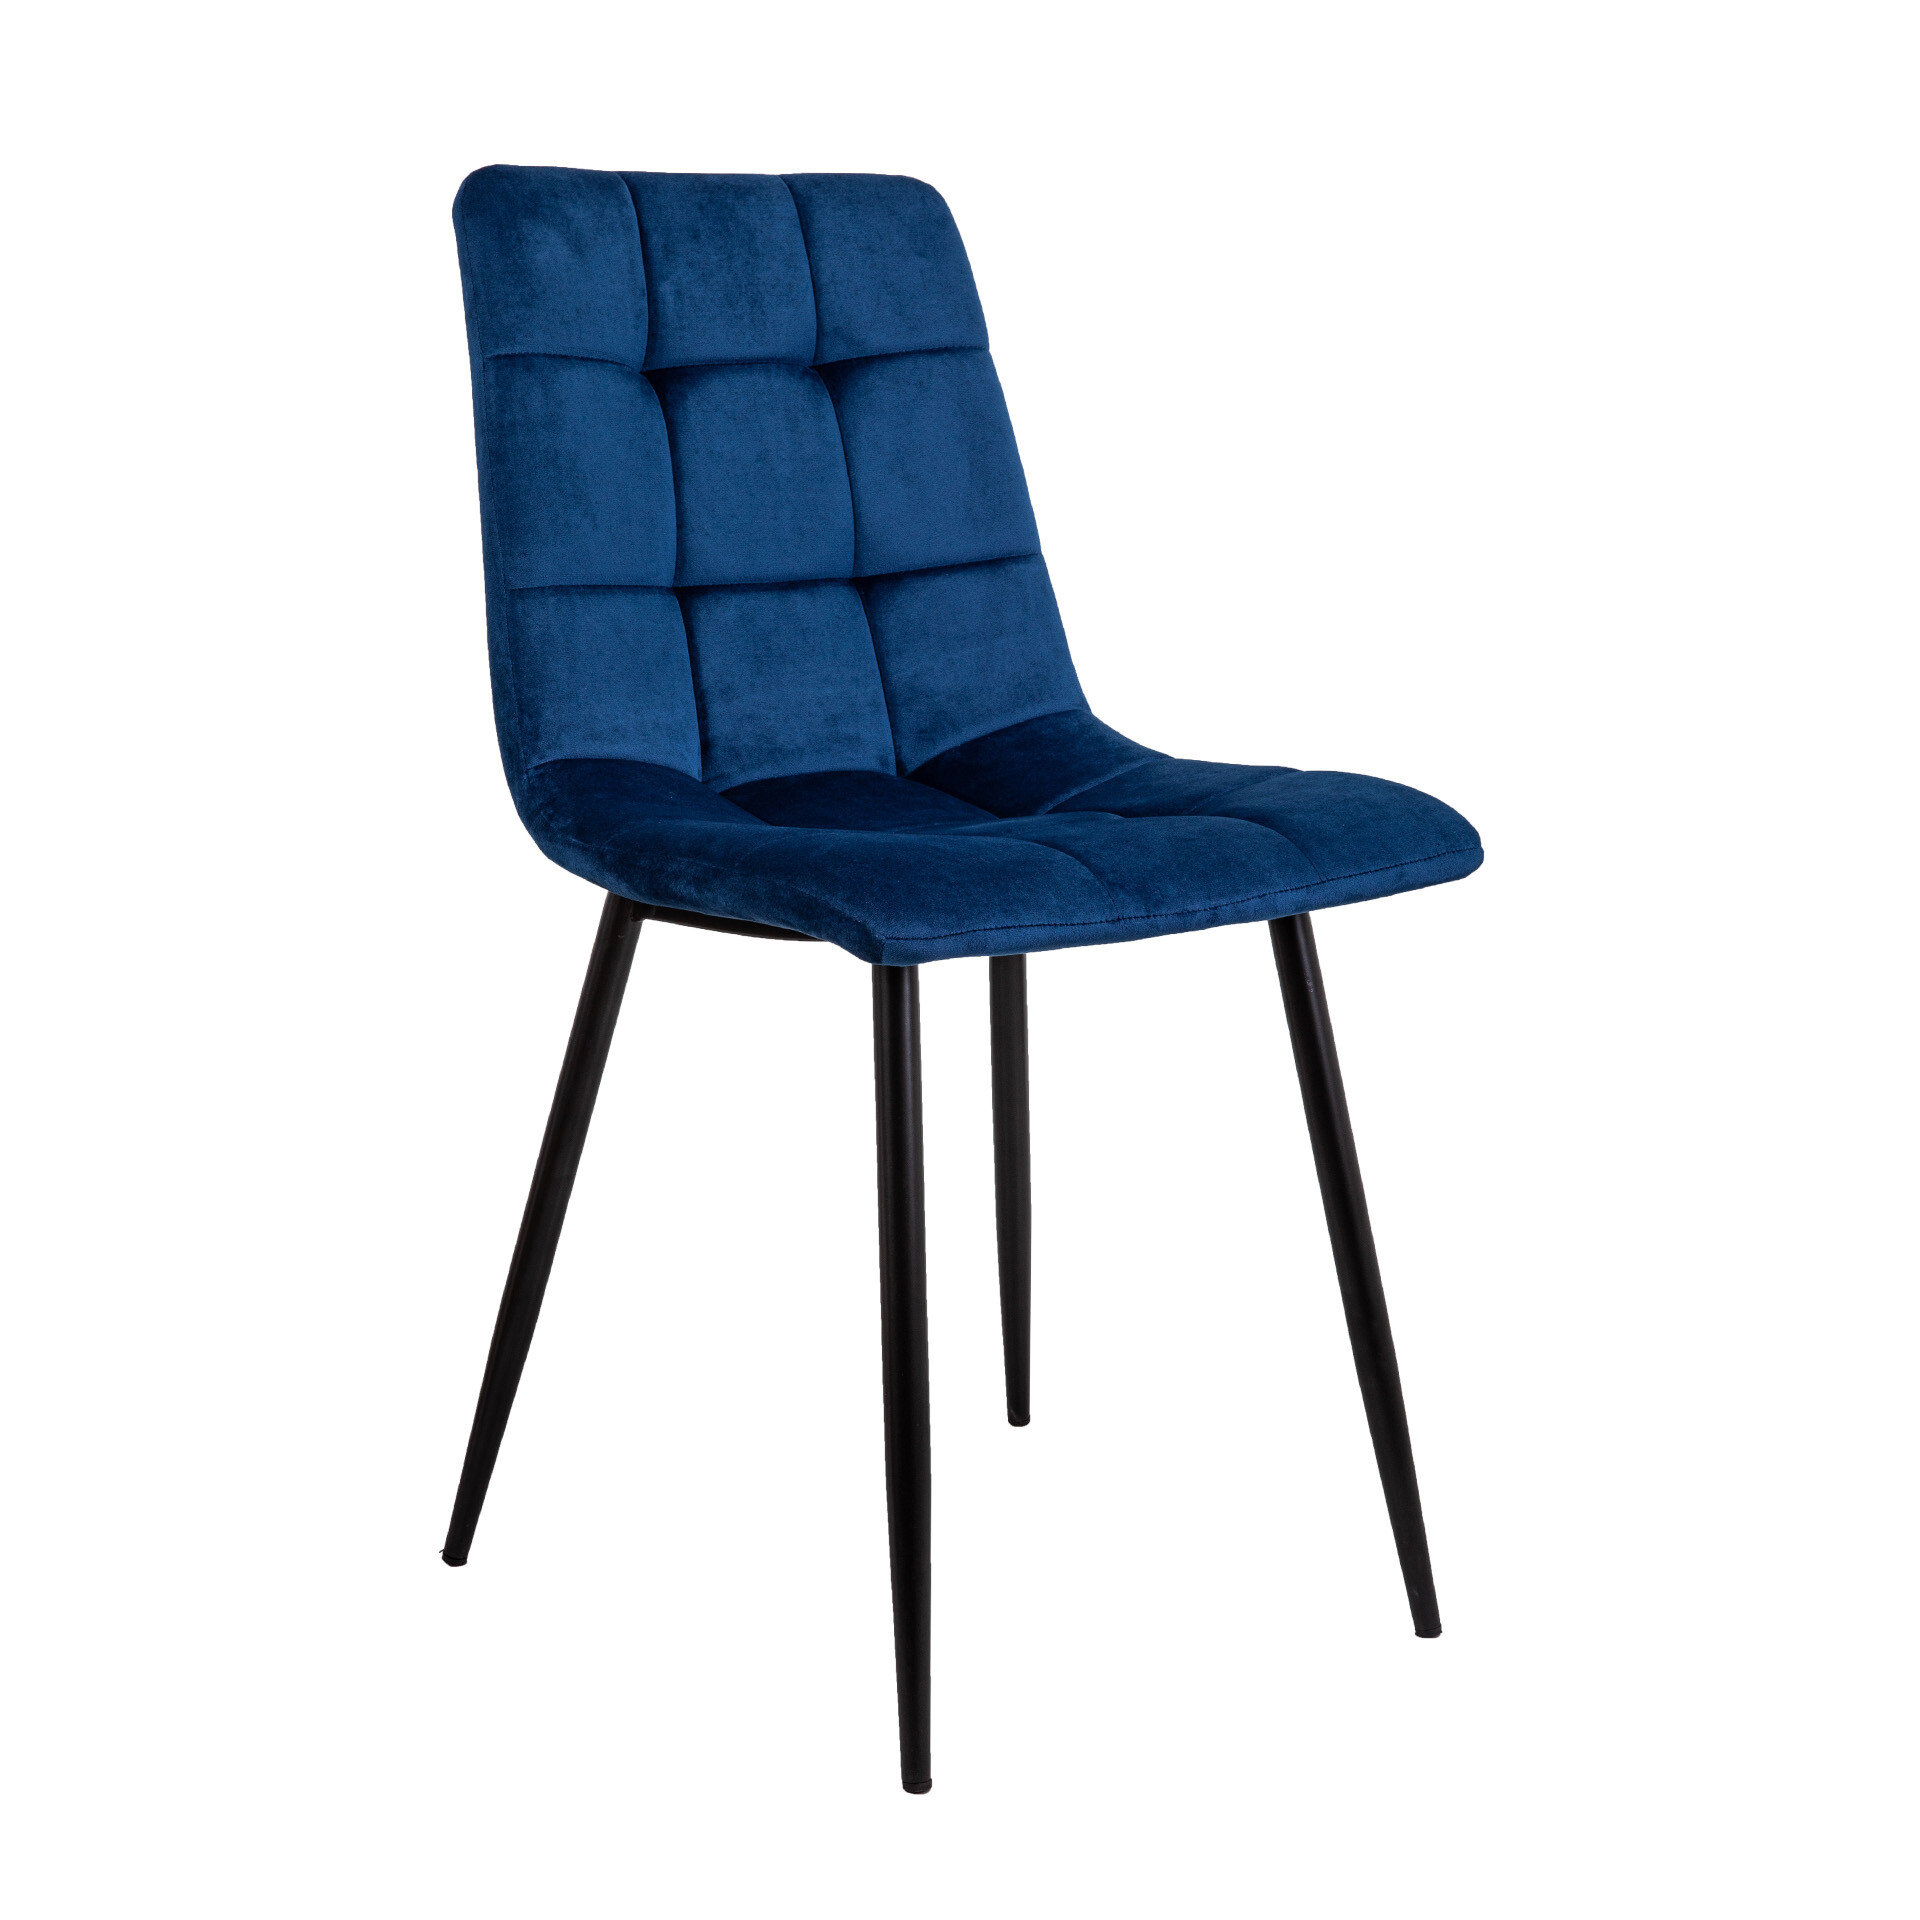 Обеденный стул мягкий синий DALLAS